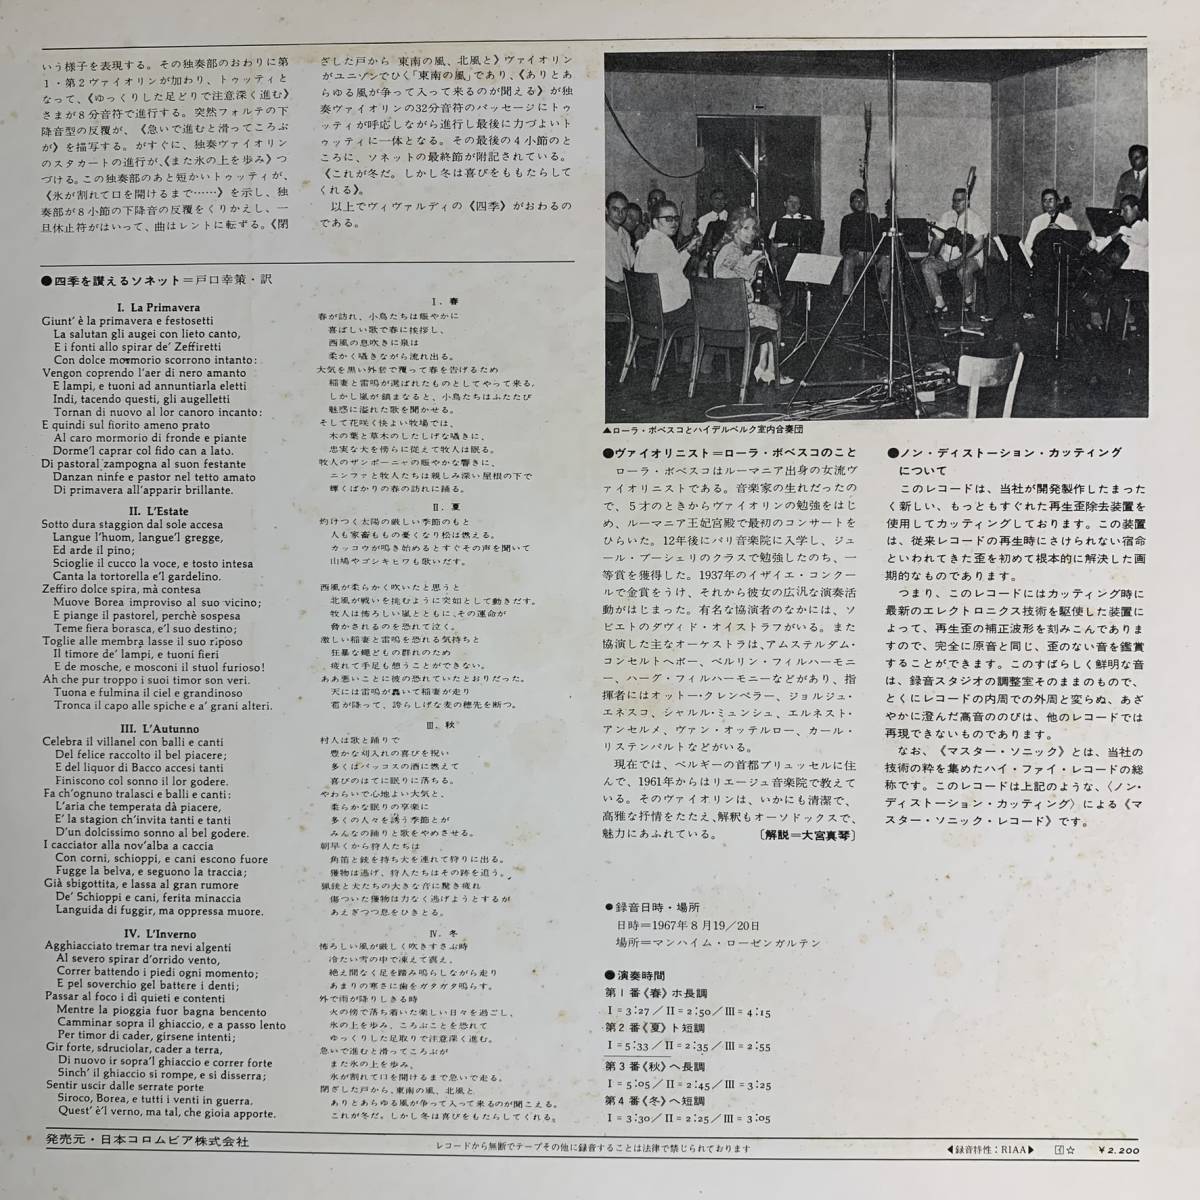 ローラ・ボベスコ / ヴィヴァルディ / MASTER SONIC / VIVALDI / 高音質 / ハイデルベルク室内合奏団 / 1971年 COLUMBIA NCC-8027_画像4